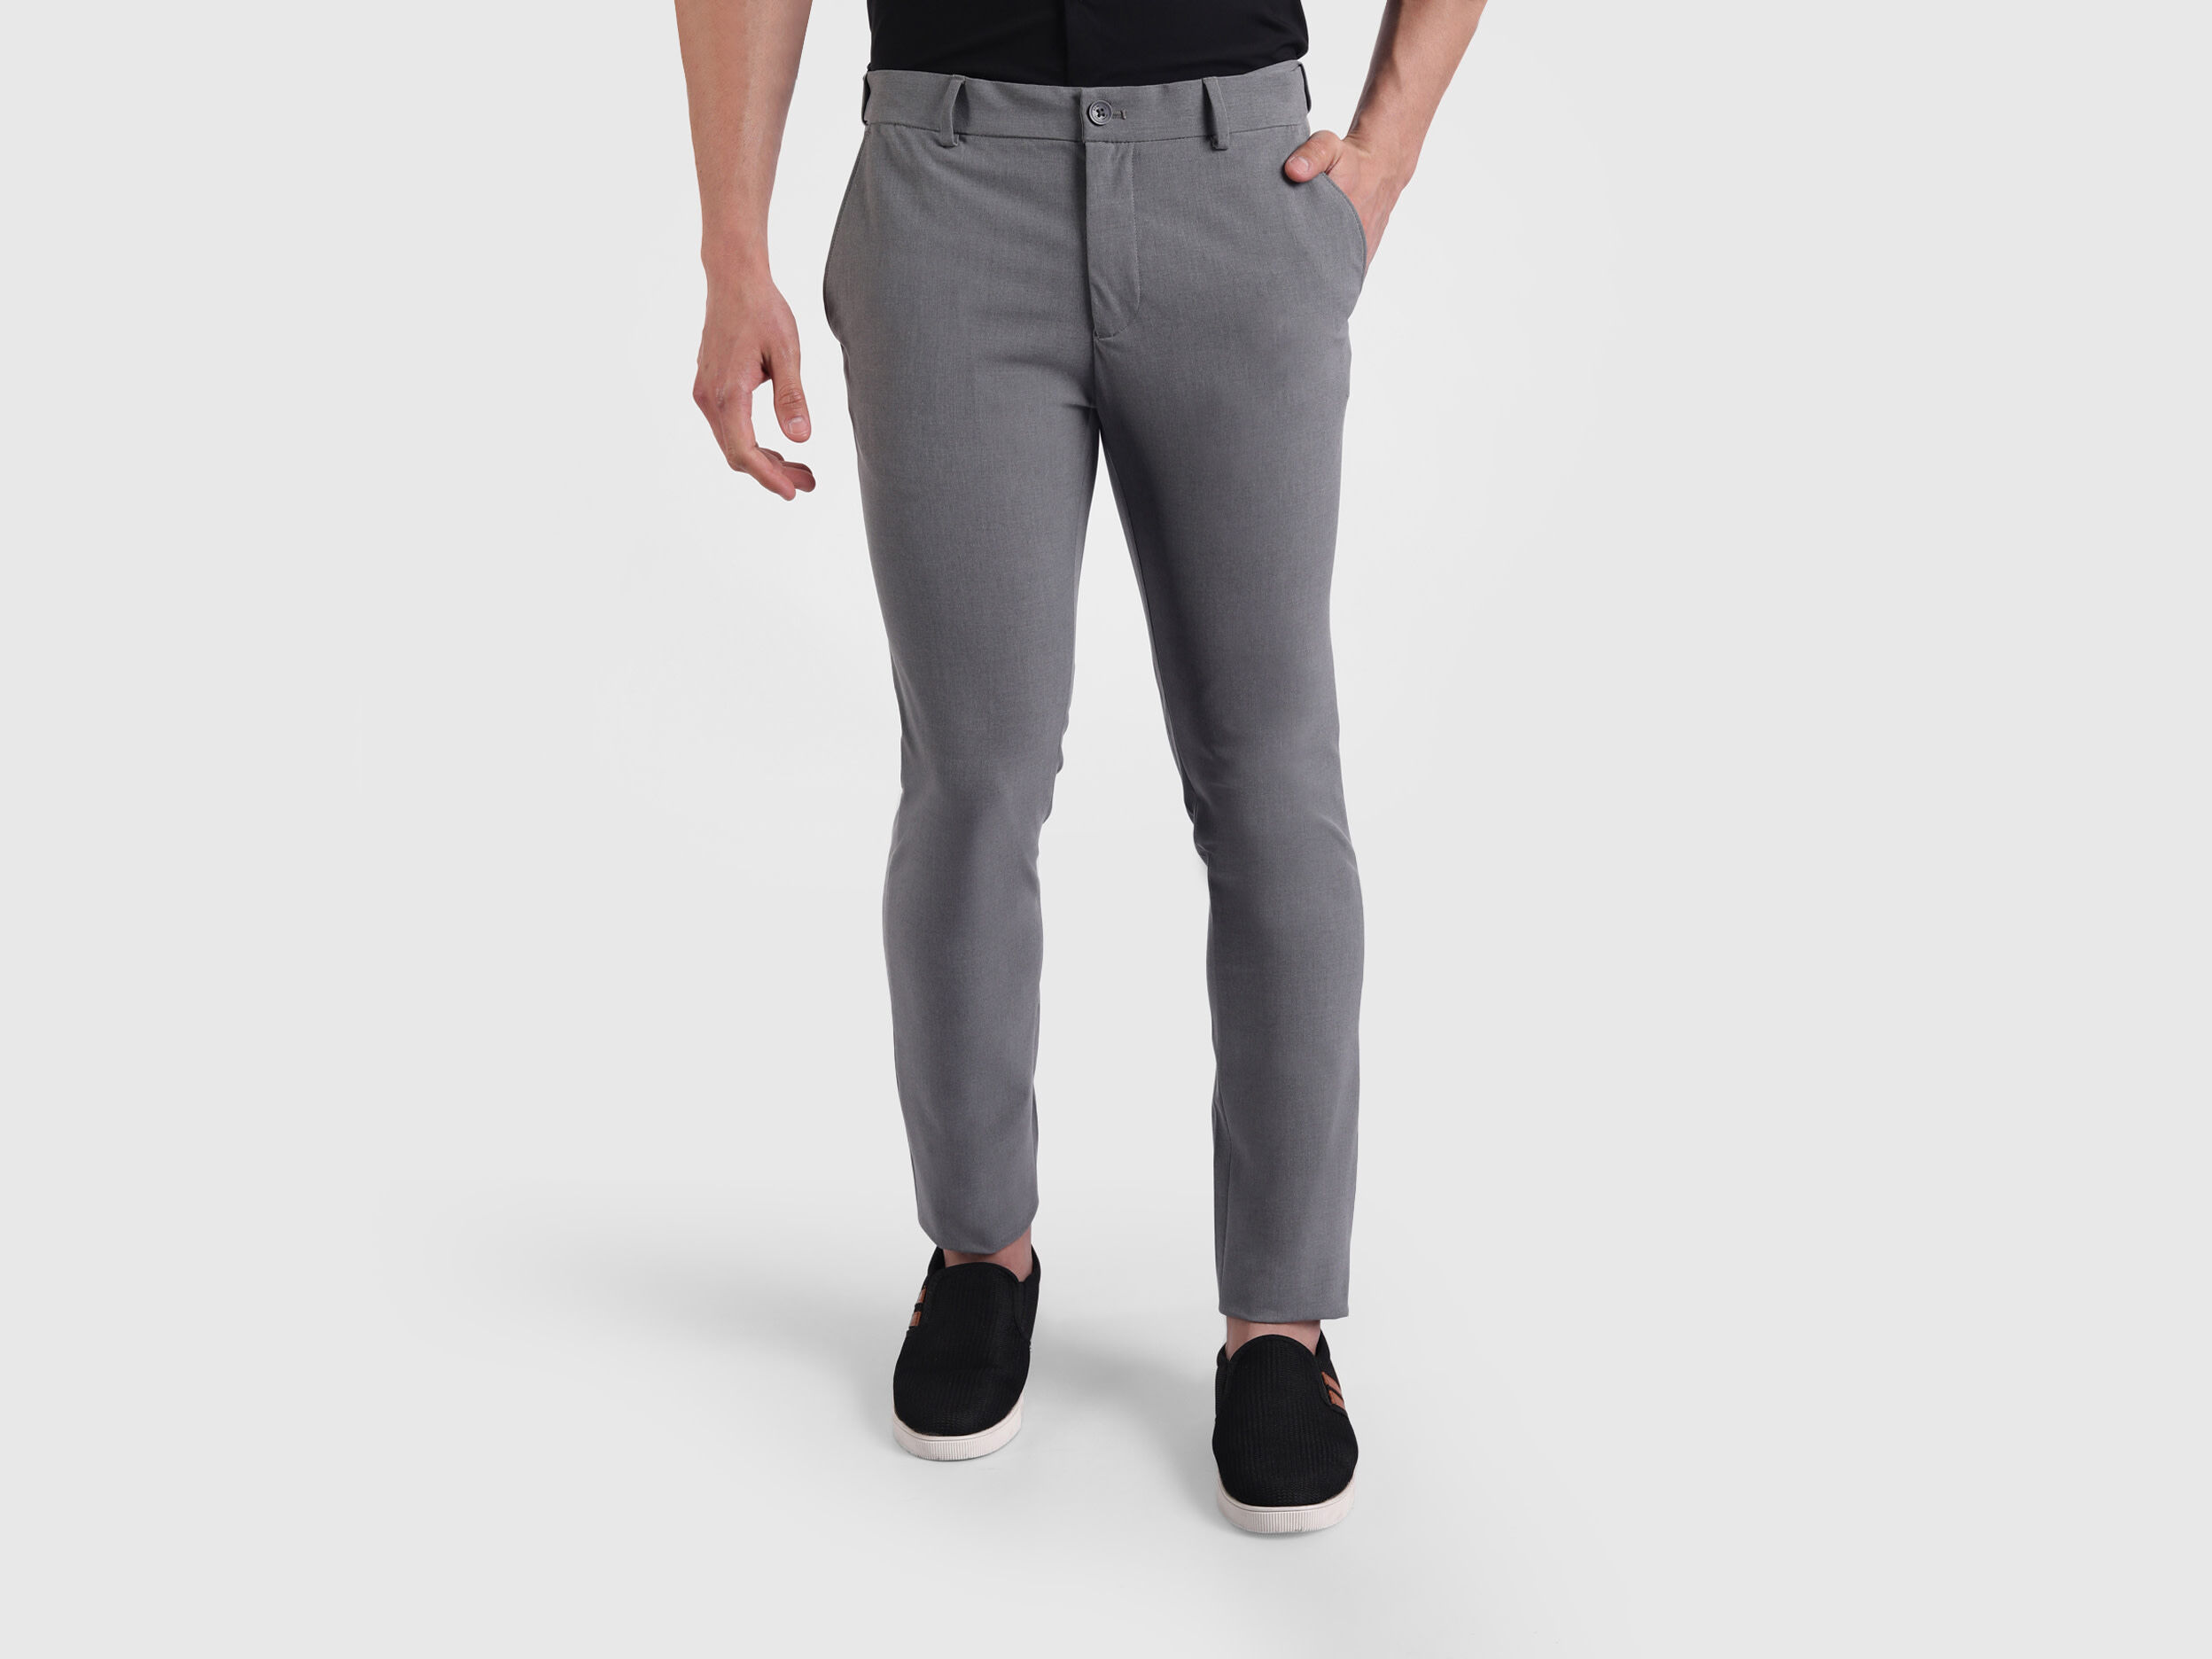 Buy Black Trousers & Pants for Men by NTWK Online | Ajio.com